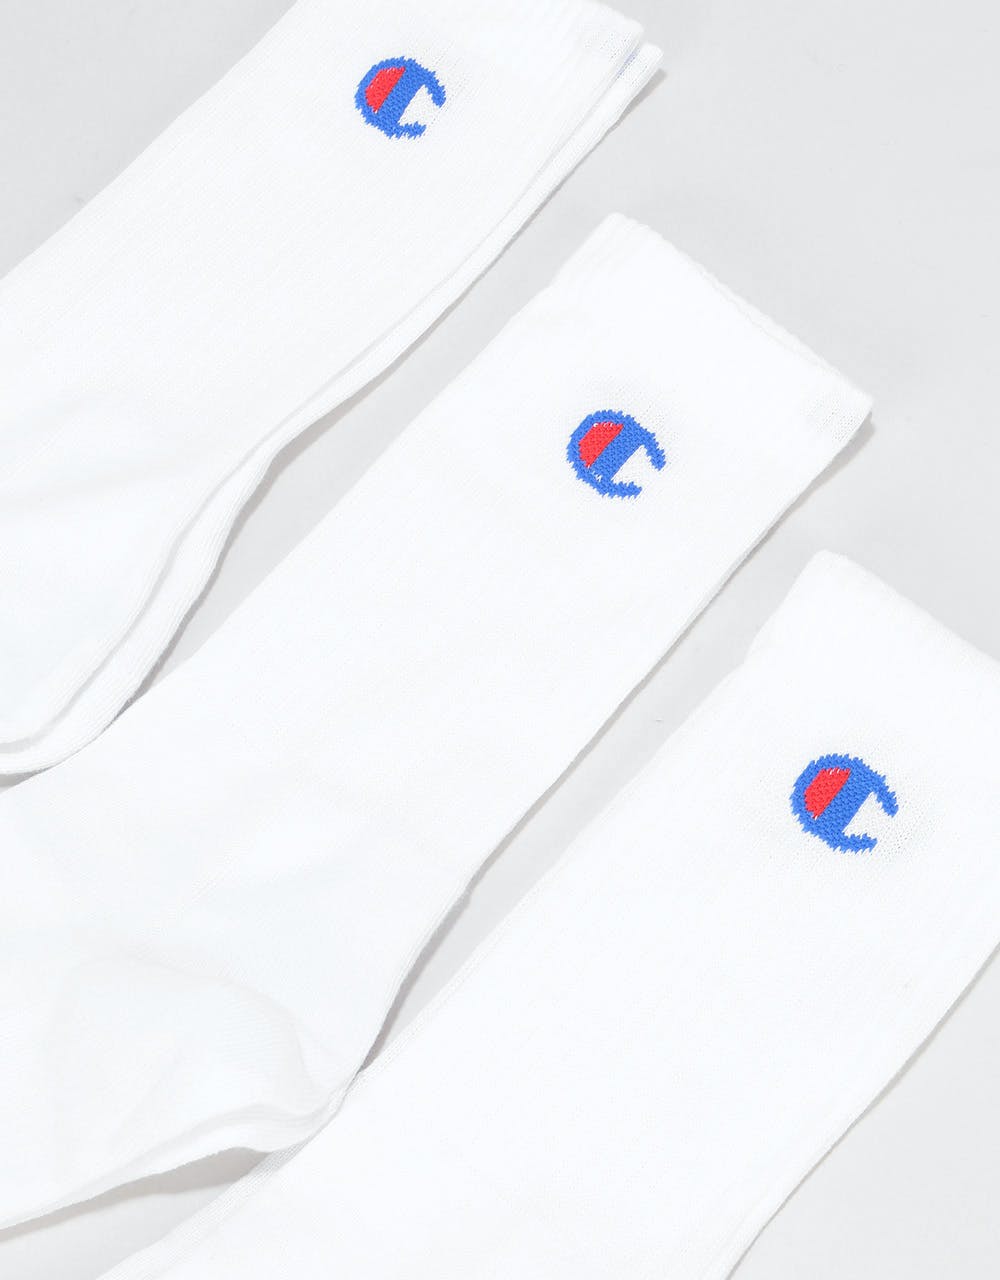 Champion C Logo 3 Pack Socks - White